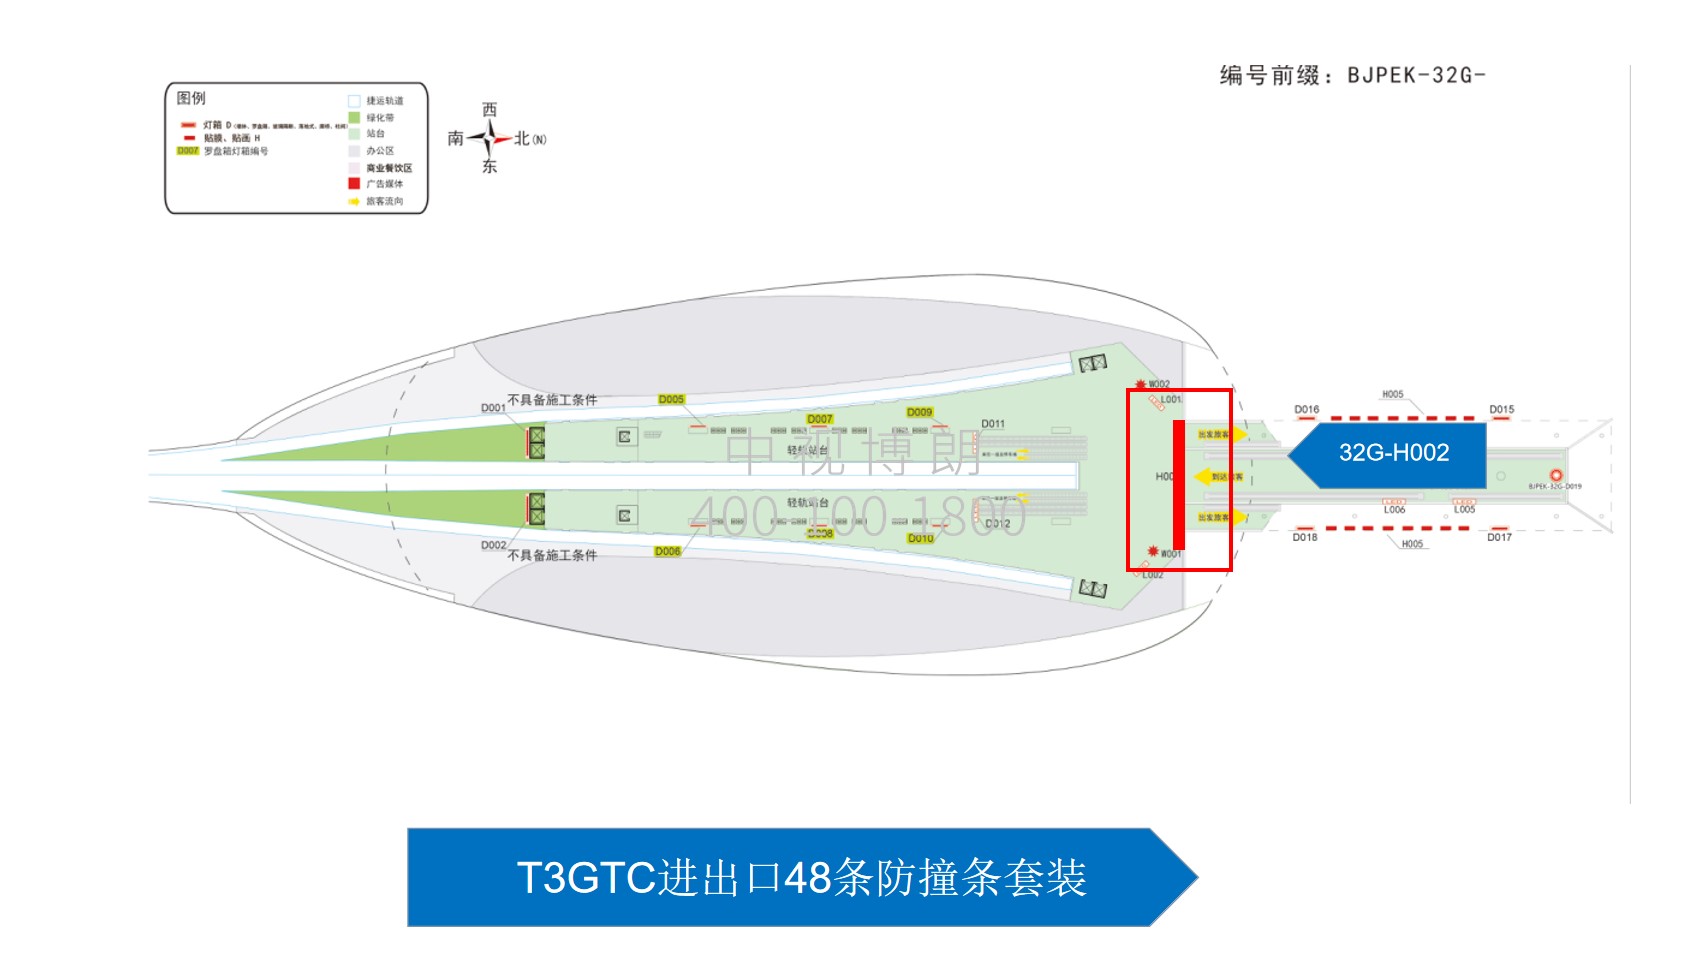 北京首都机场广告-T3GTC进出口48条防撞条套装位置图